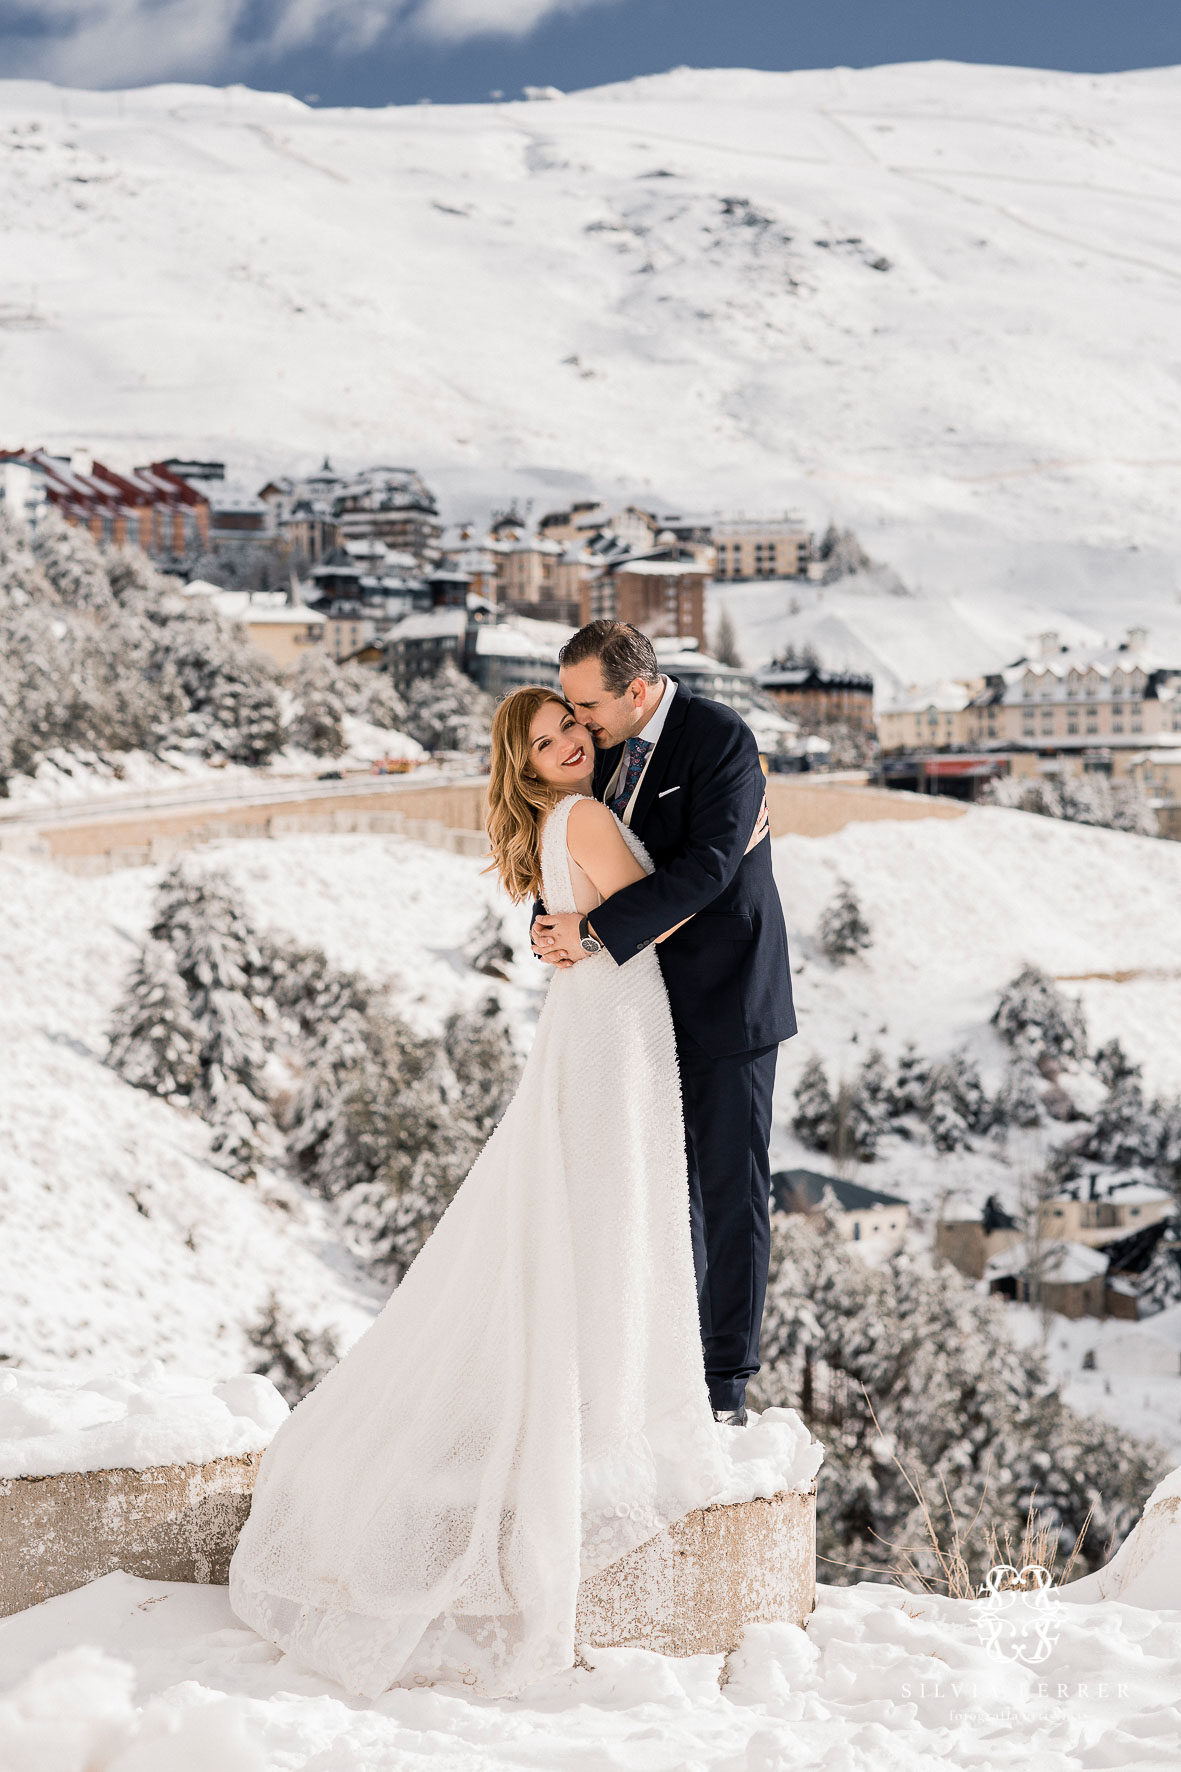 Postboda en sierra nevada granada fotografos boda novios